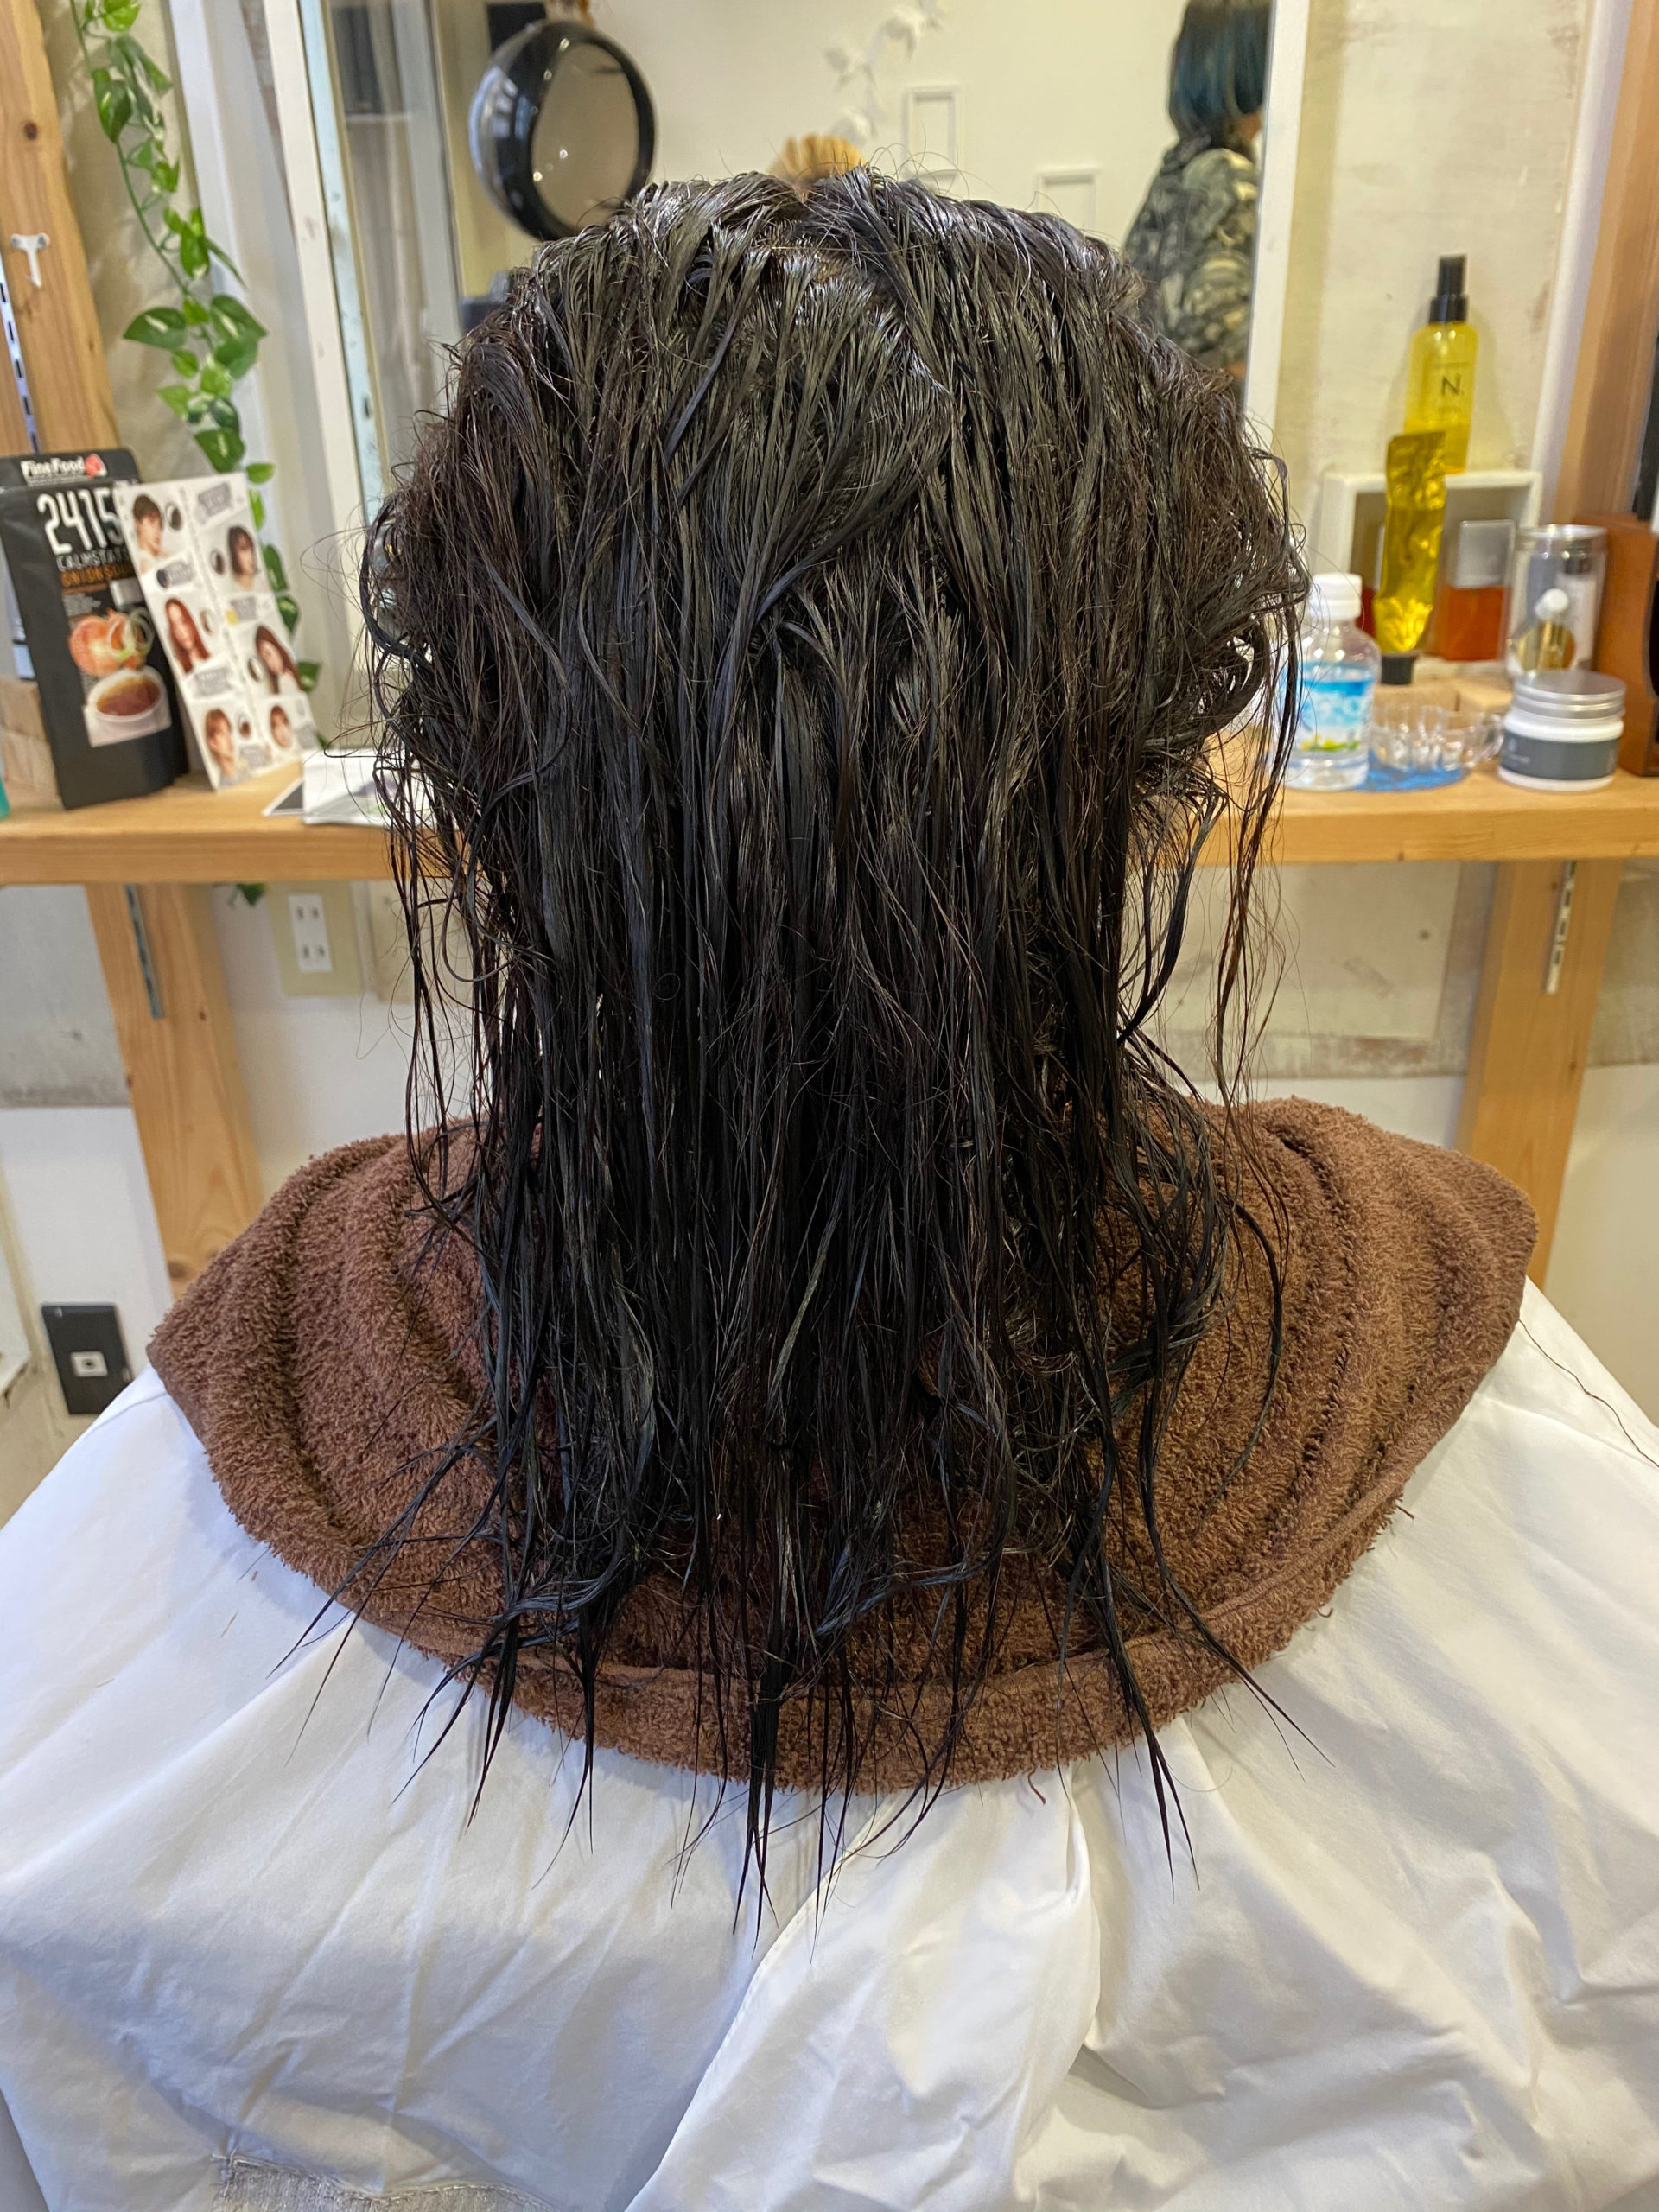 軟毛の縮毛矯正でつやっつやの艶髪。原宿・表参道『髪のお悩みを解決するヘアケア美容師の挑戦』